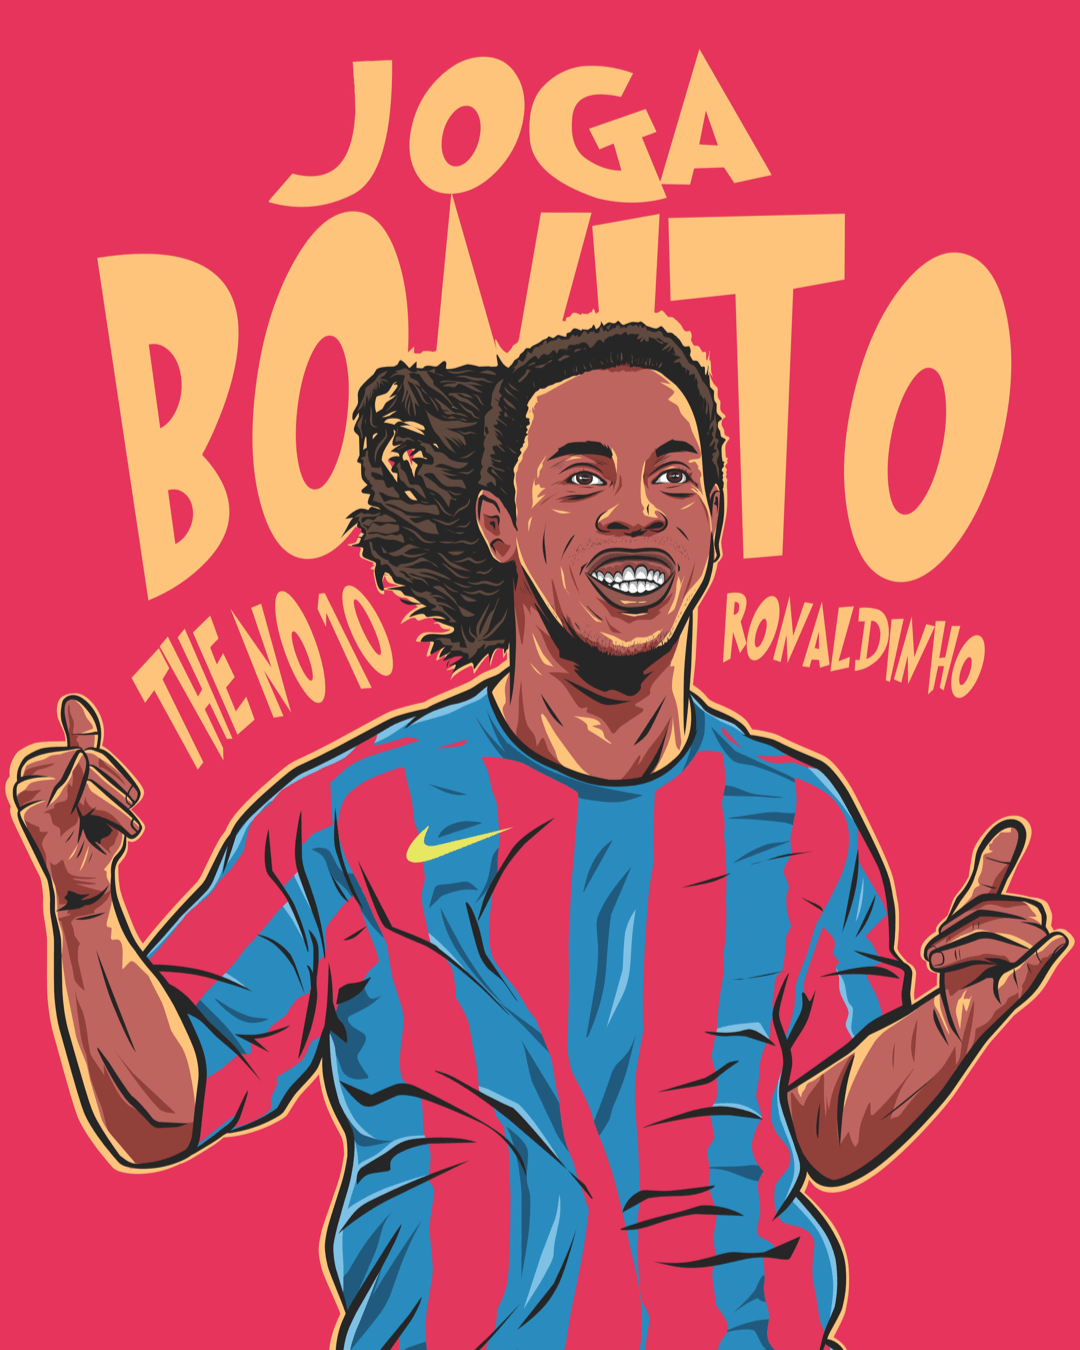 Barcelona Ronaldinho football shirt design - Enigma Football